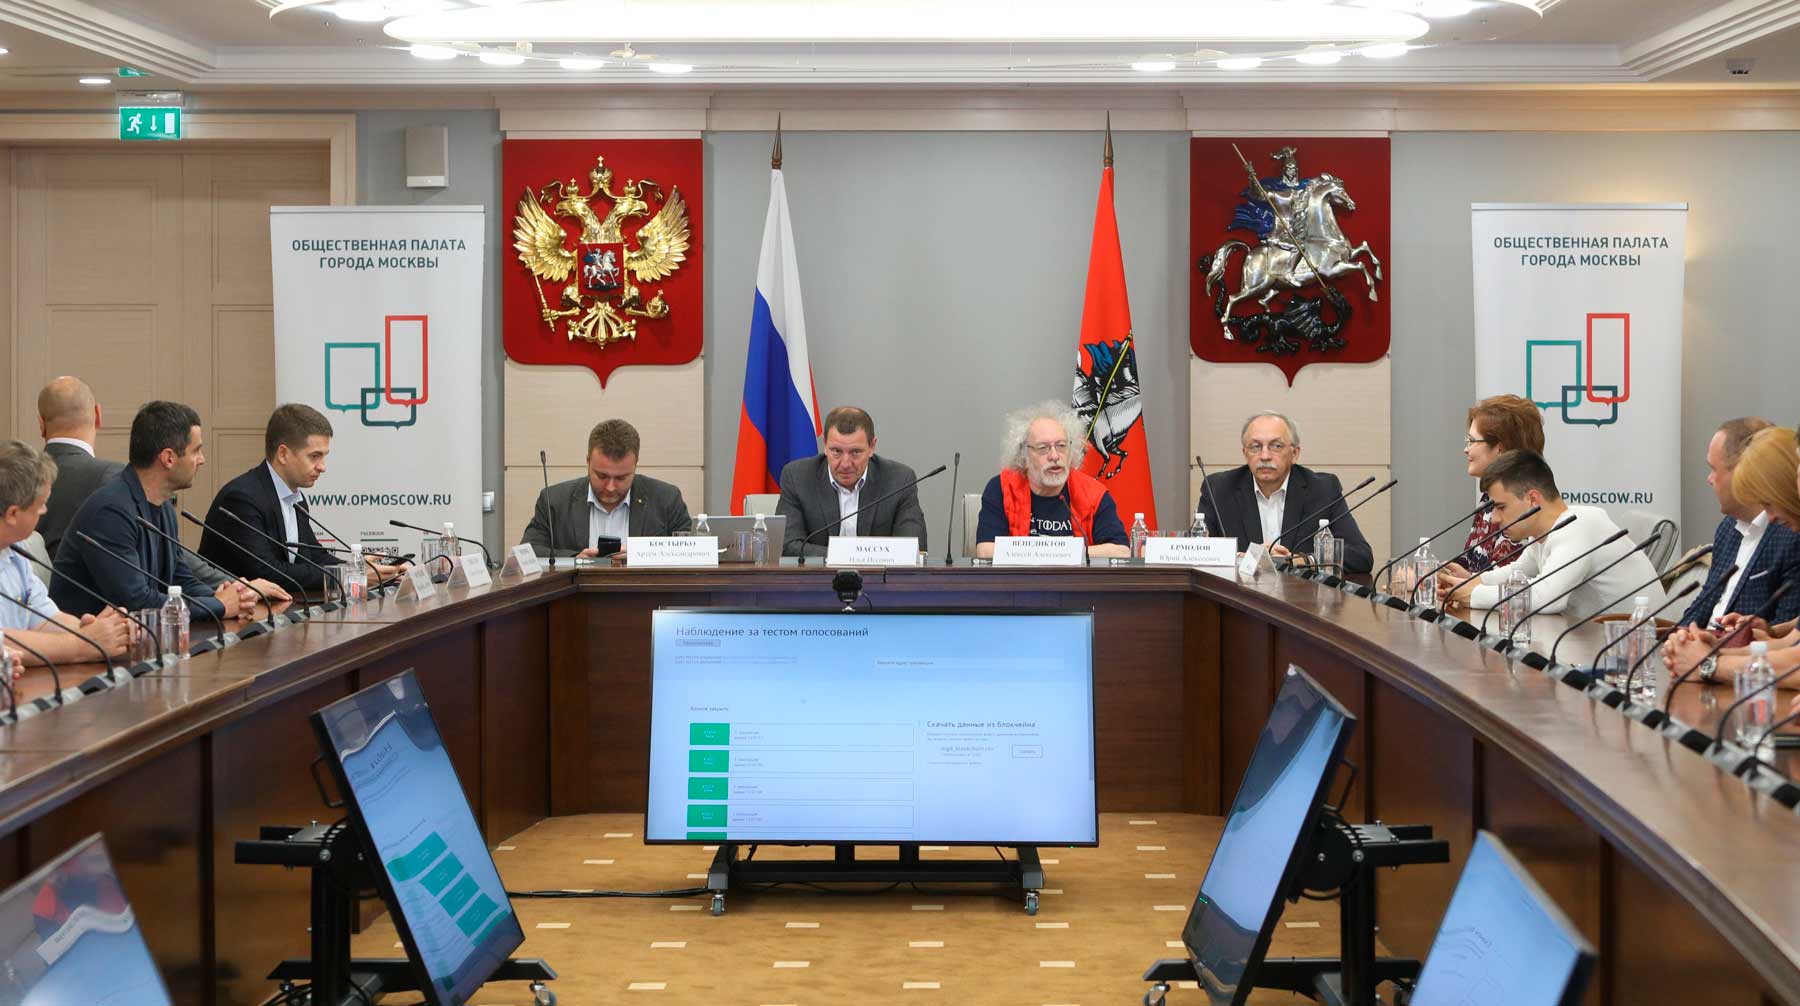 Кандидаты обладают особыми заслугами перед государством и обществом, отметили в Кремле Фото: © АГН Москва